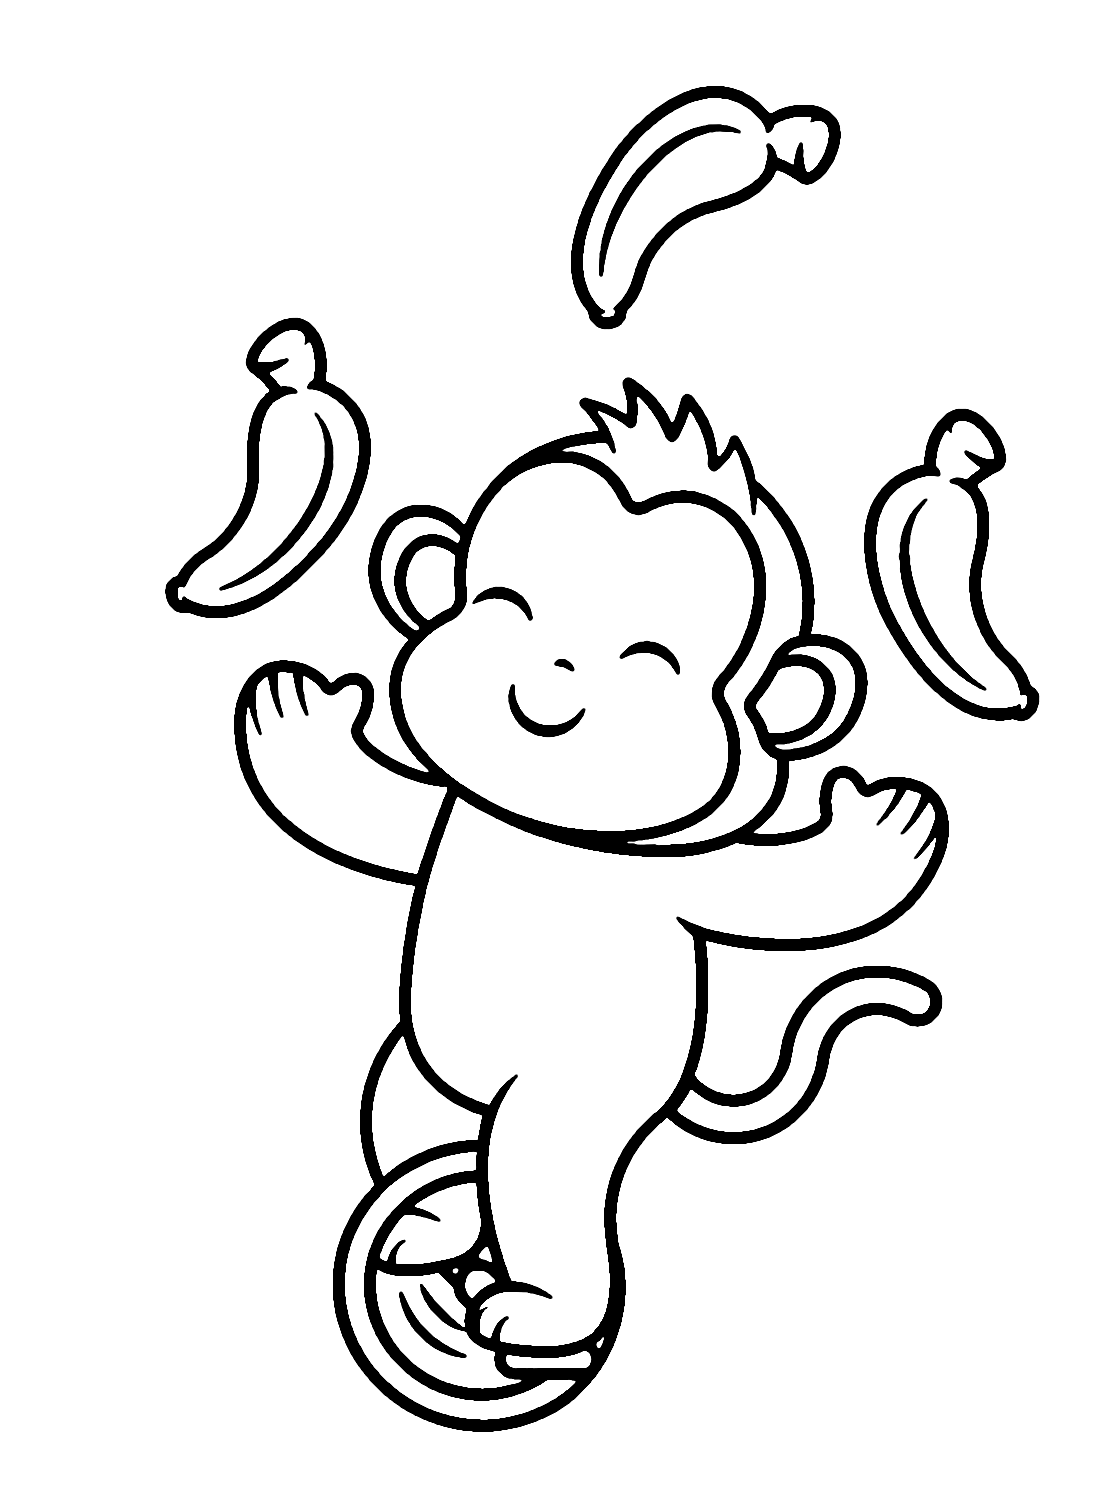 猴子马戏团用独轮车玩香蕉